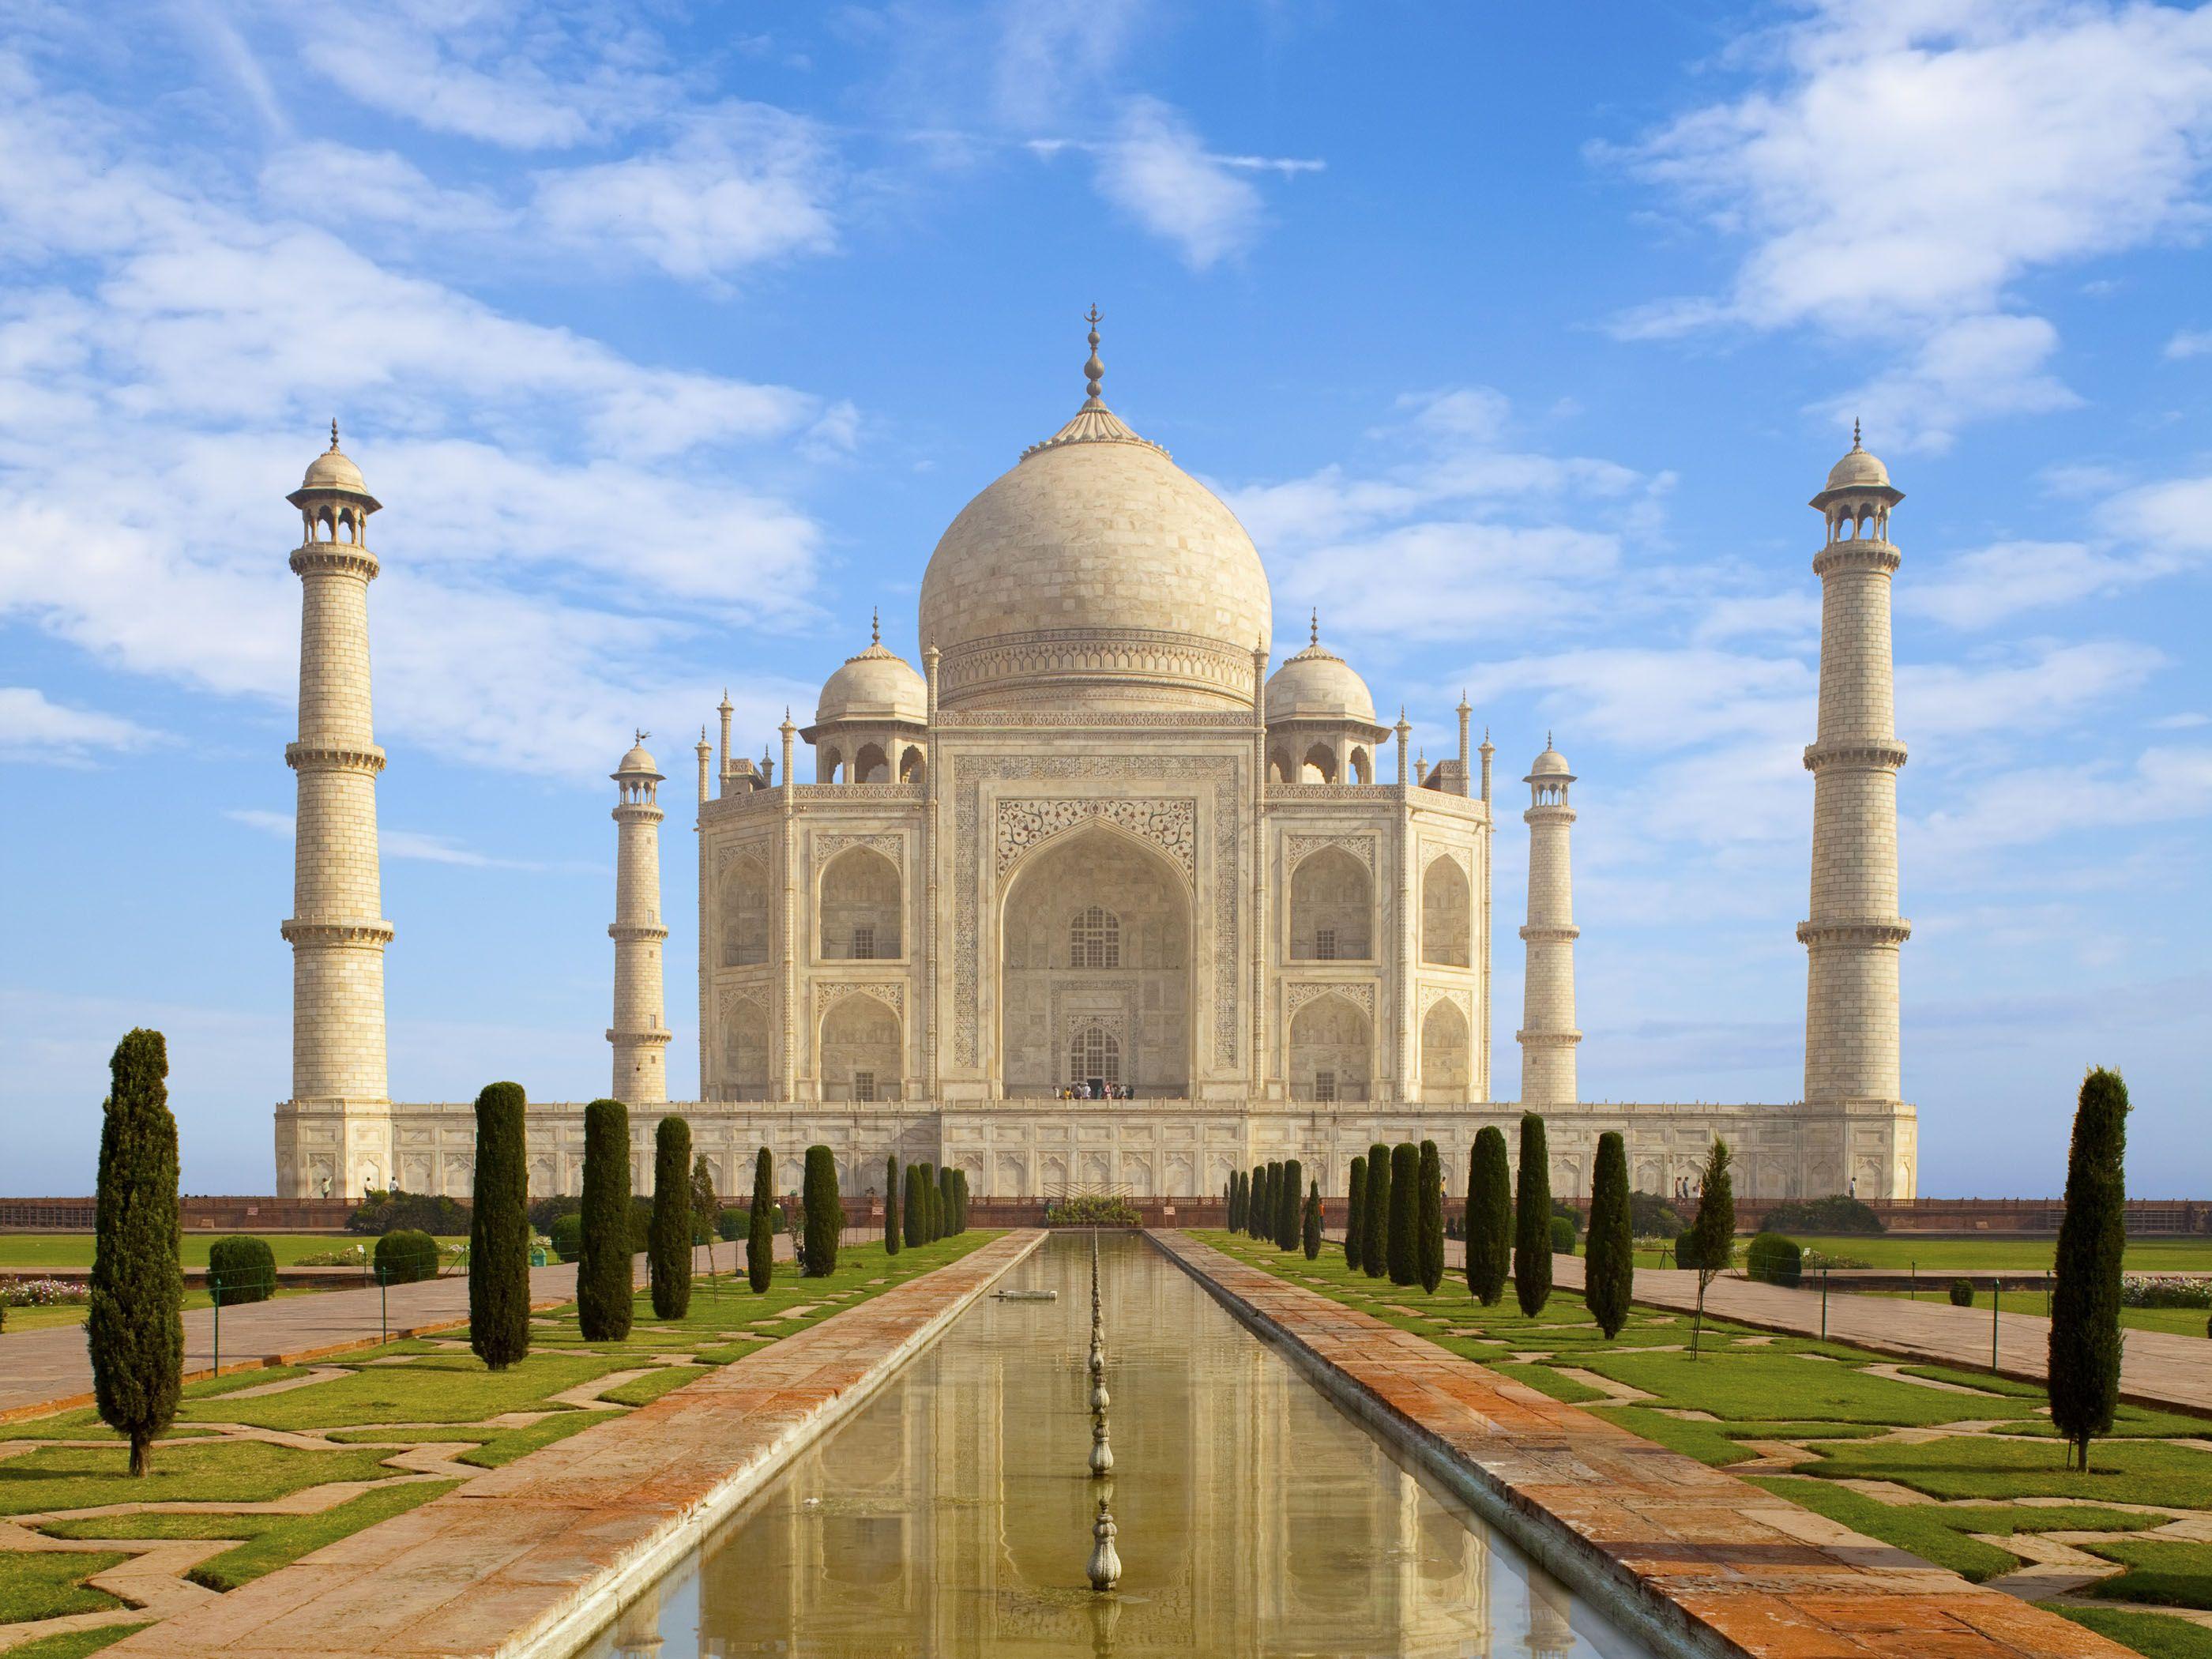 2800x2100 Tải xuống miễn phí Hình nền HD Taj Mahal [2800x2100] cho máy tính để bàn của bạn